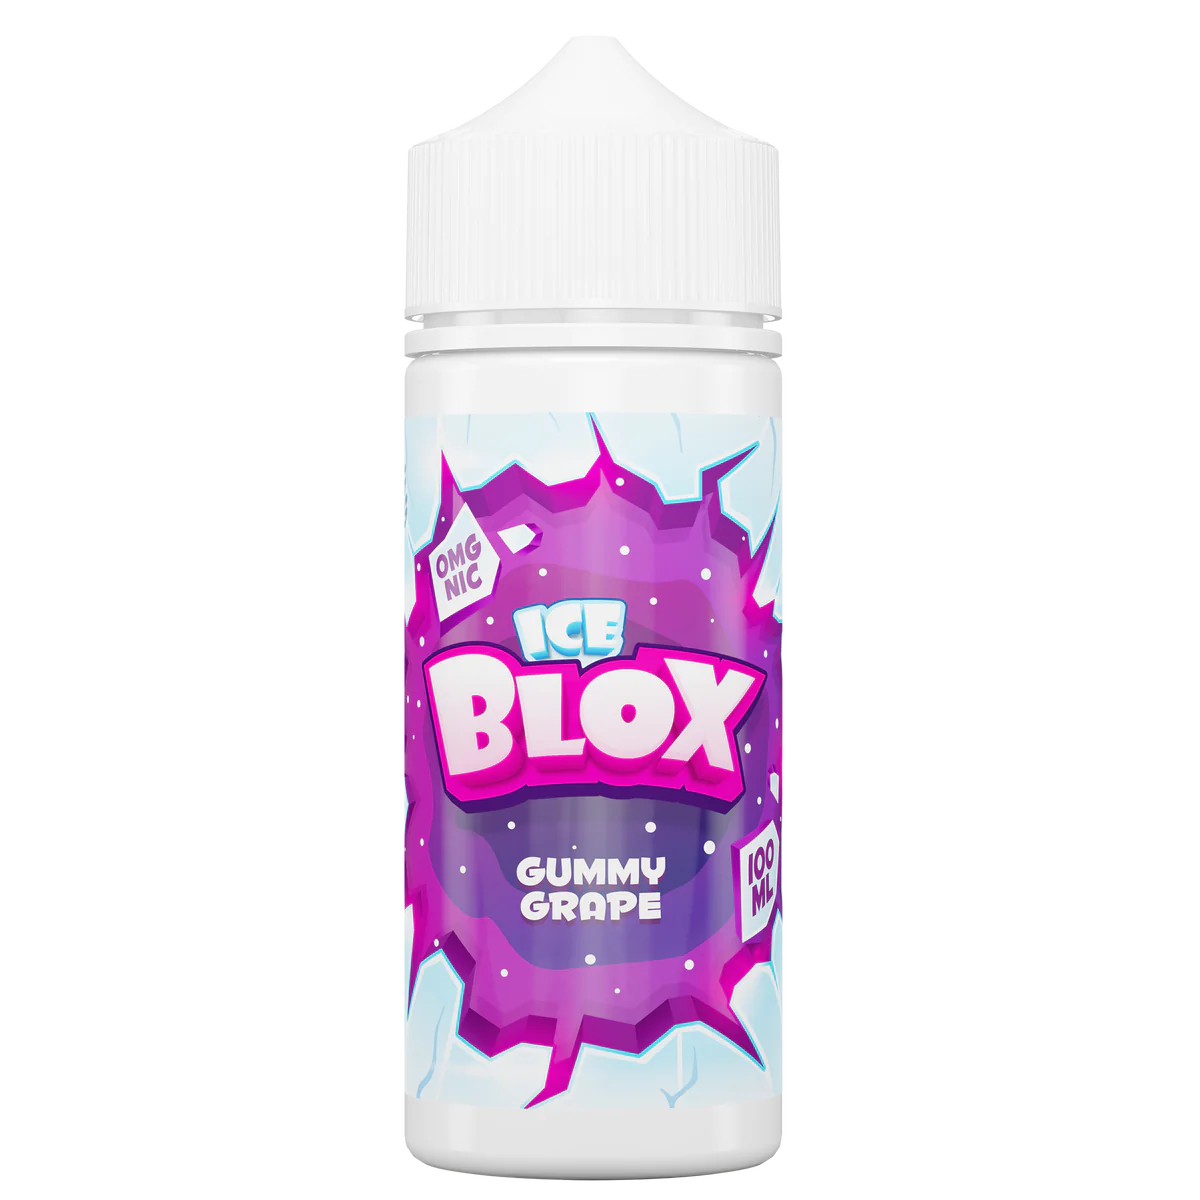 Ice Blox Gummy Grape 100ml